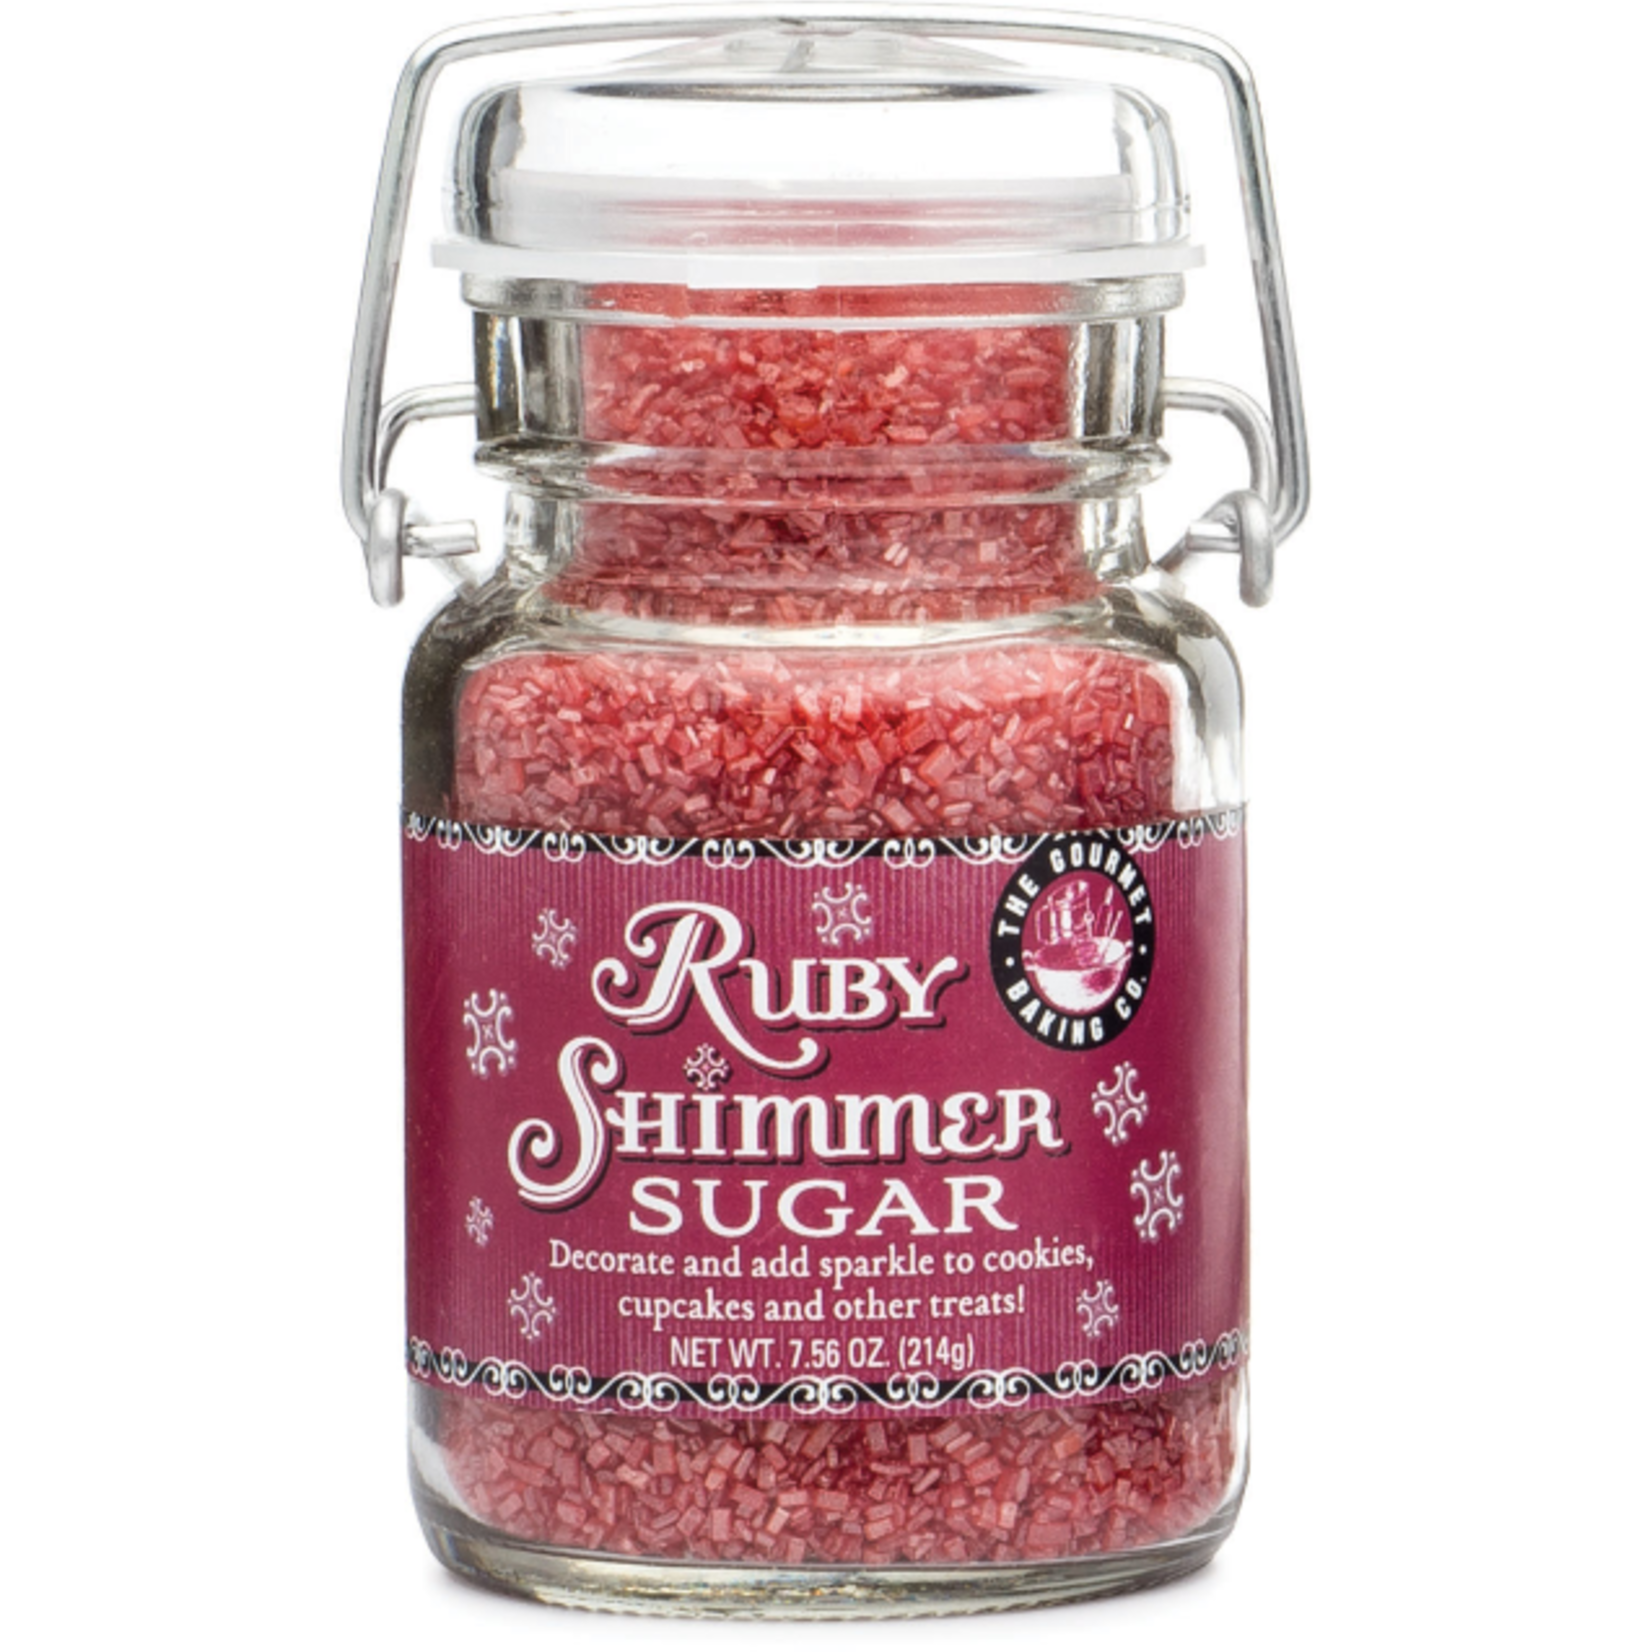 Pepper Creek Farms Everyday Ruby Shimmer Sugar